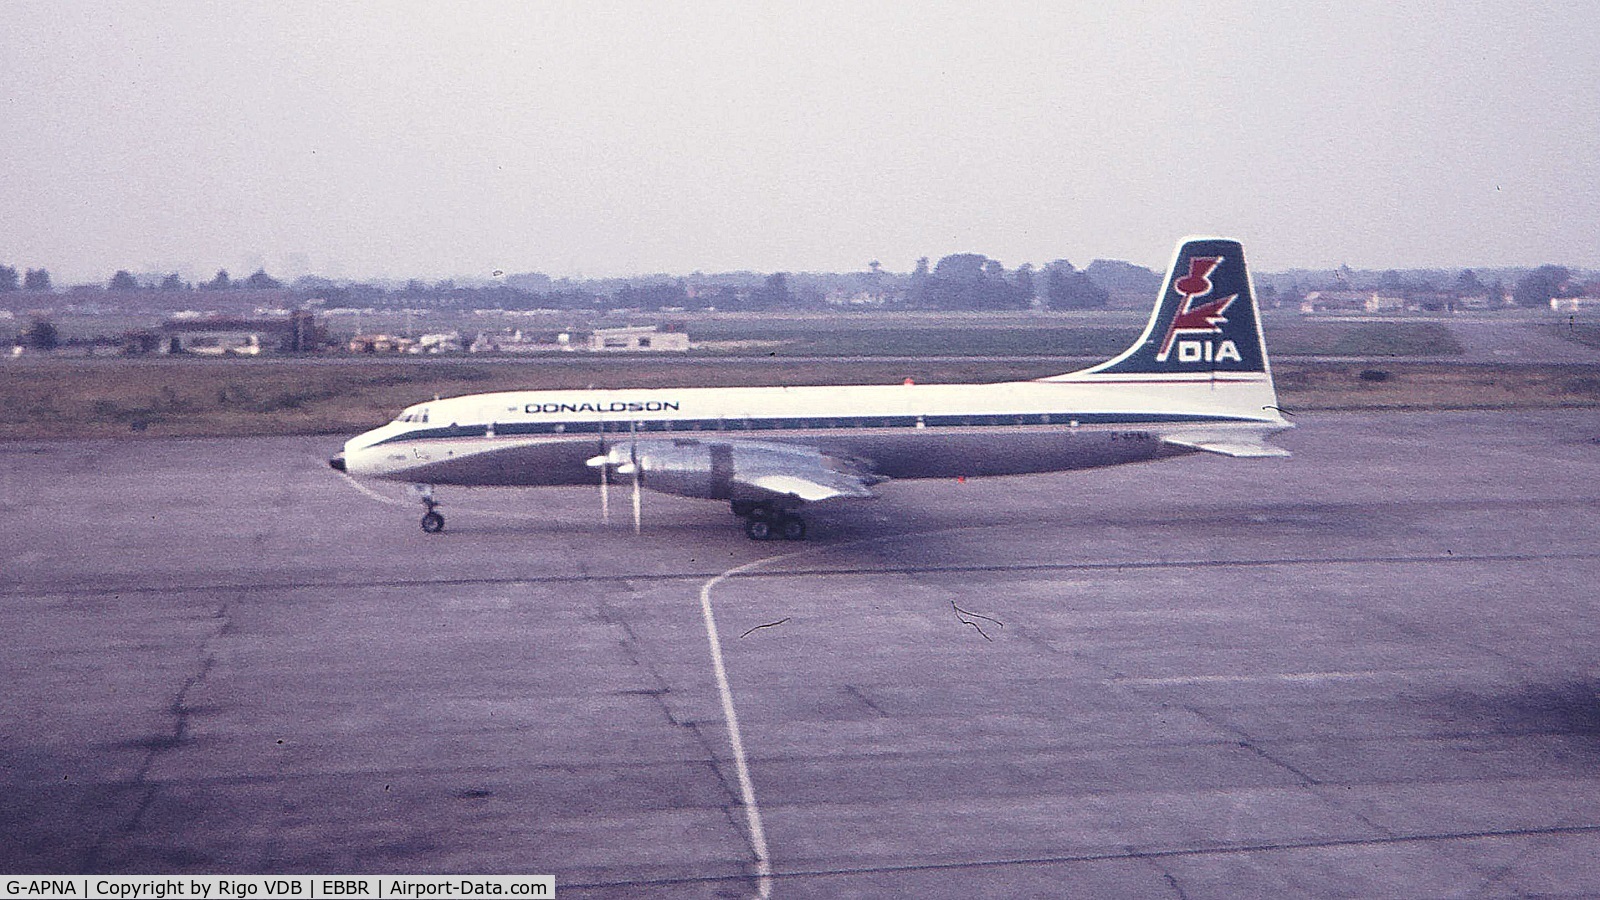 G-APNA, 1958 Bristol 175 Britannia 317 C/N 13425, G-APNA at Brussels in late 1960's.